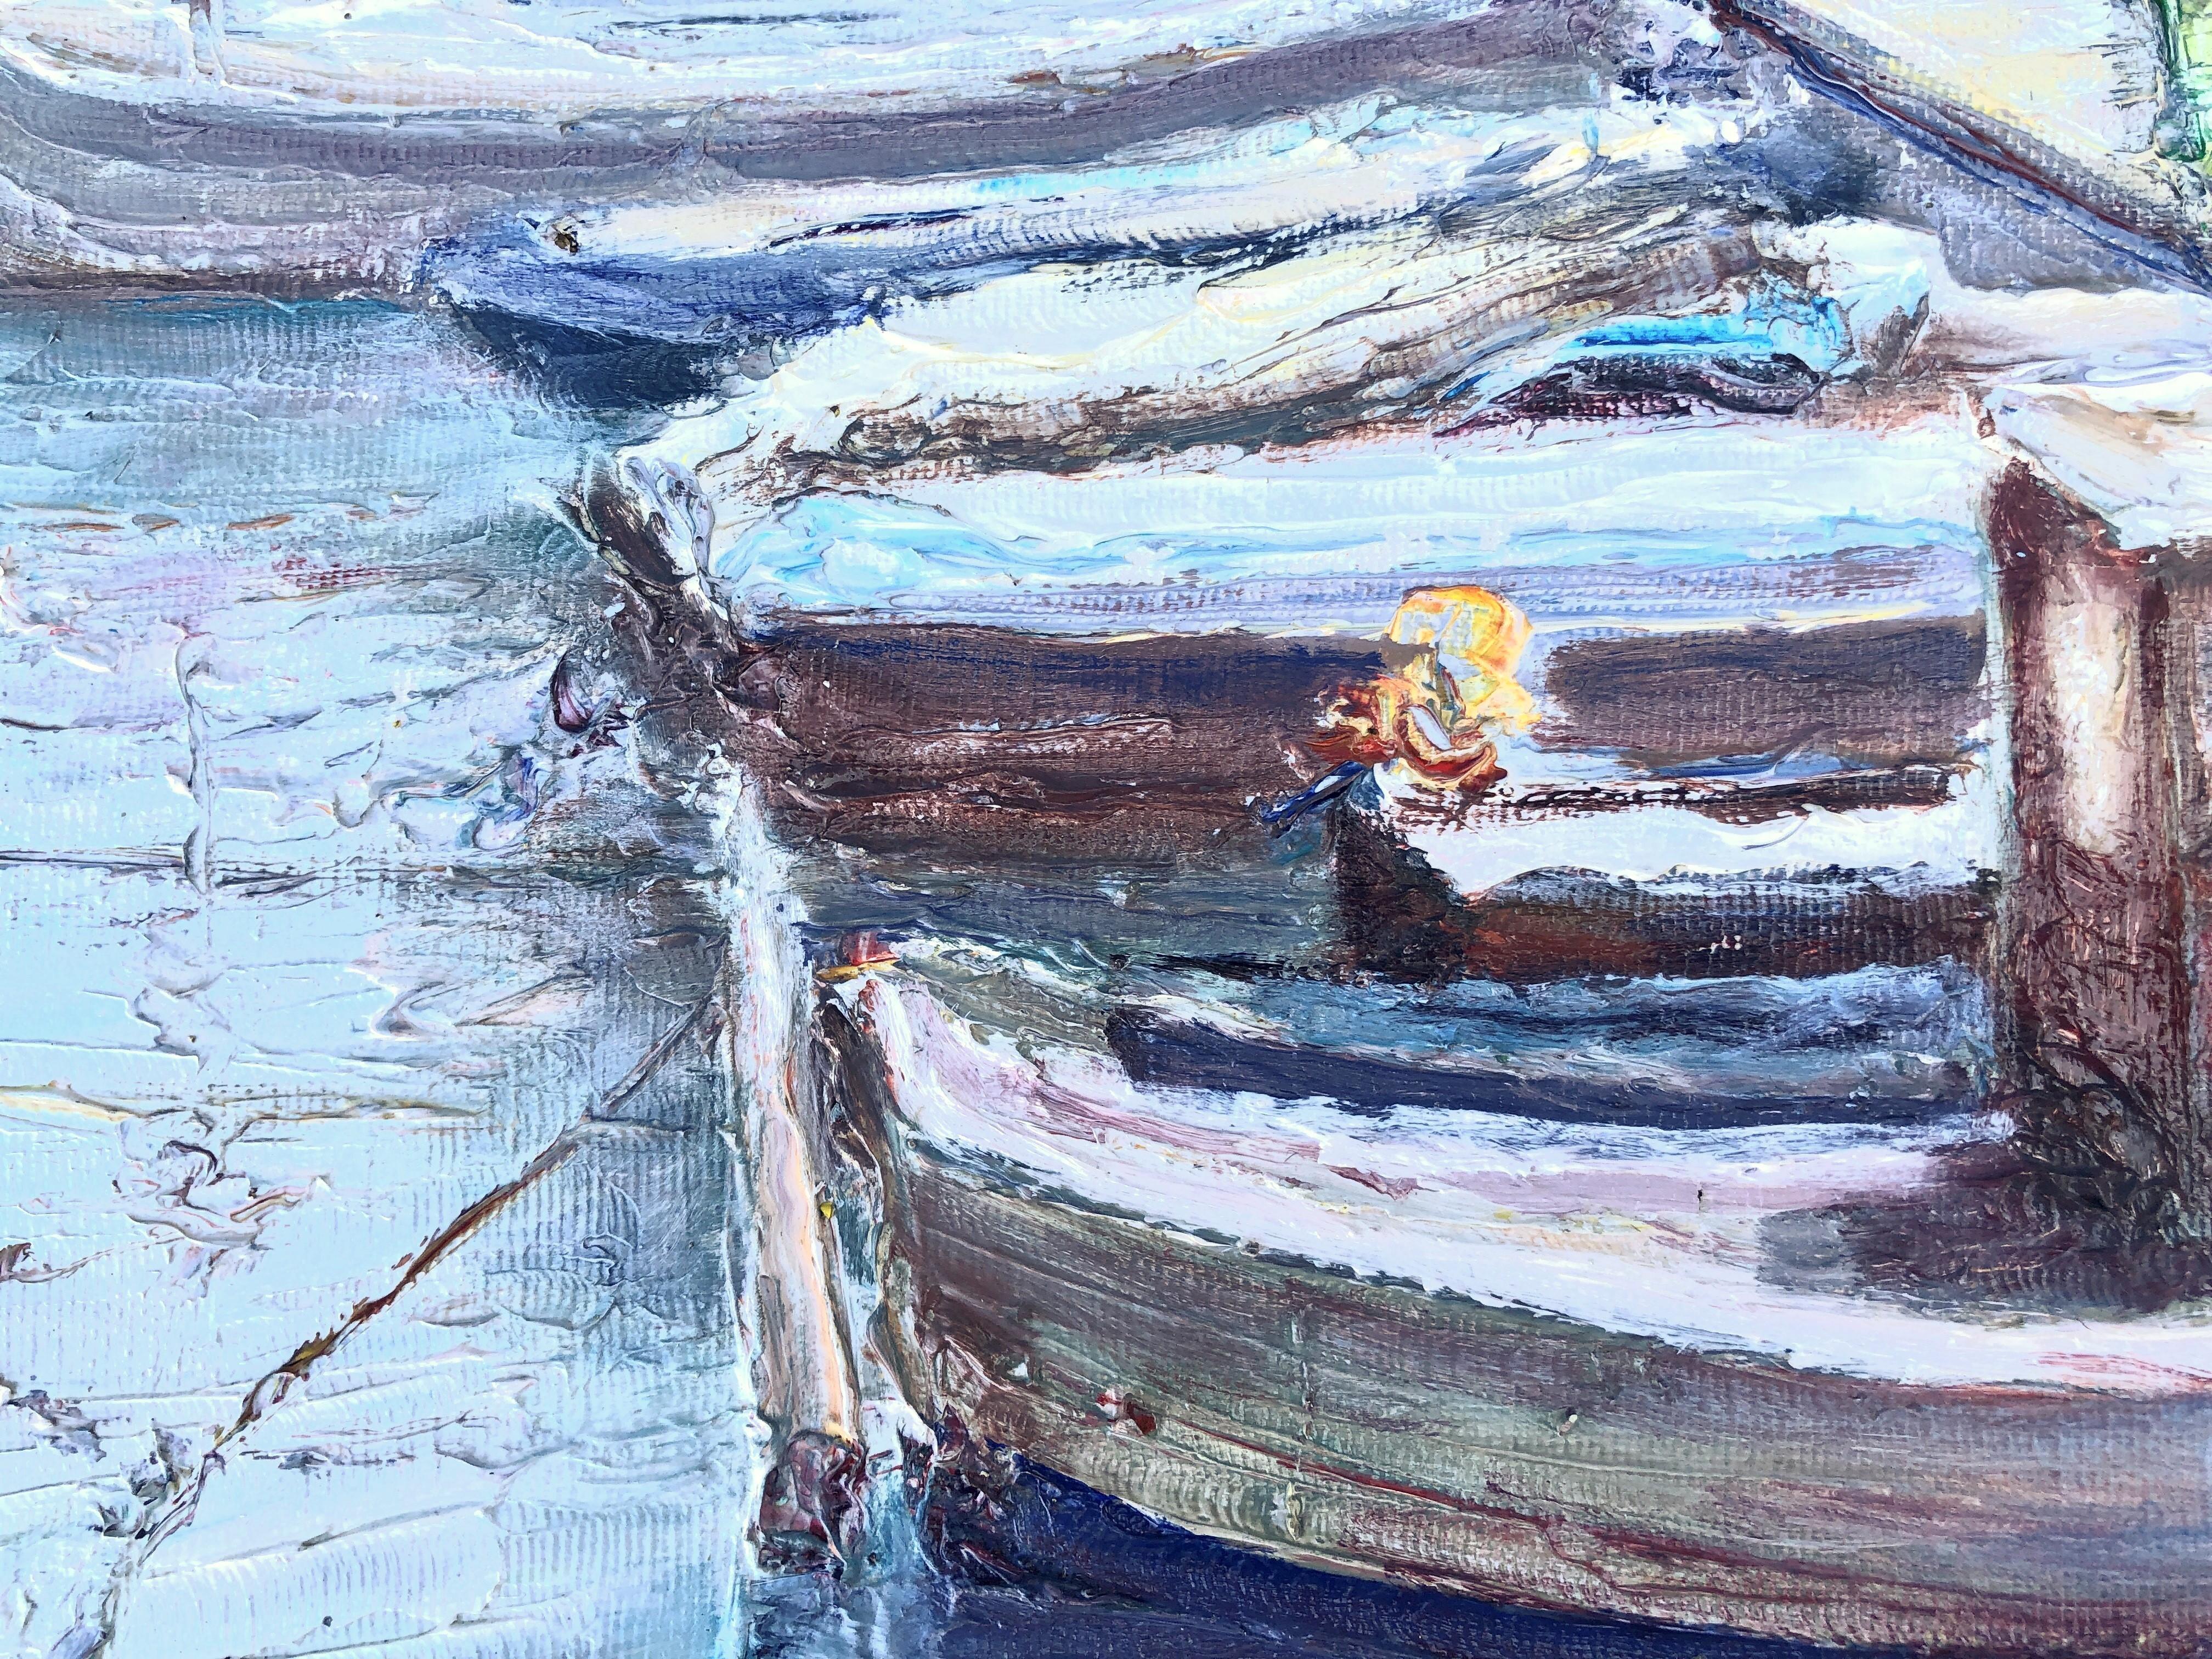 Port de plaisance, port de sport huile sur toile peinture paysage marin espagnol - Post-impressionnisme Painting par Angel Bertran Montserrat